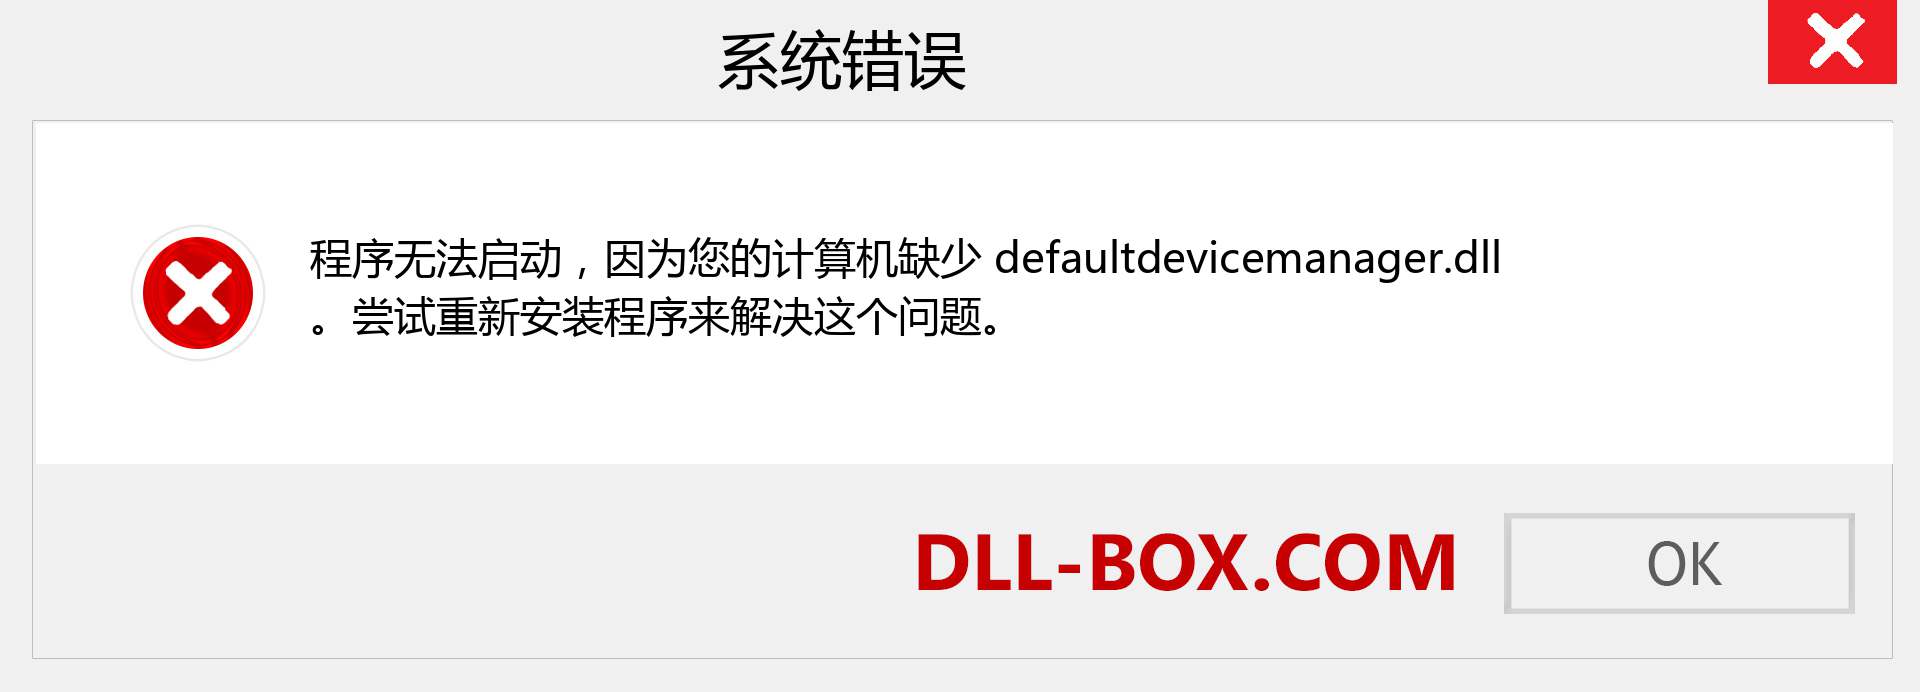 defaultdevicemanager.dll 文件丢失？。 适用于 Windows 7、8、10 的下载 - 修复 Windows、照片、图像上的 defaultdevicemanager dll 丢失错误